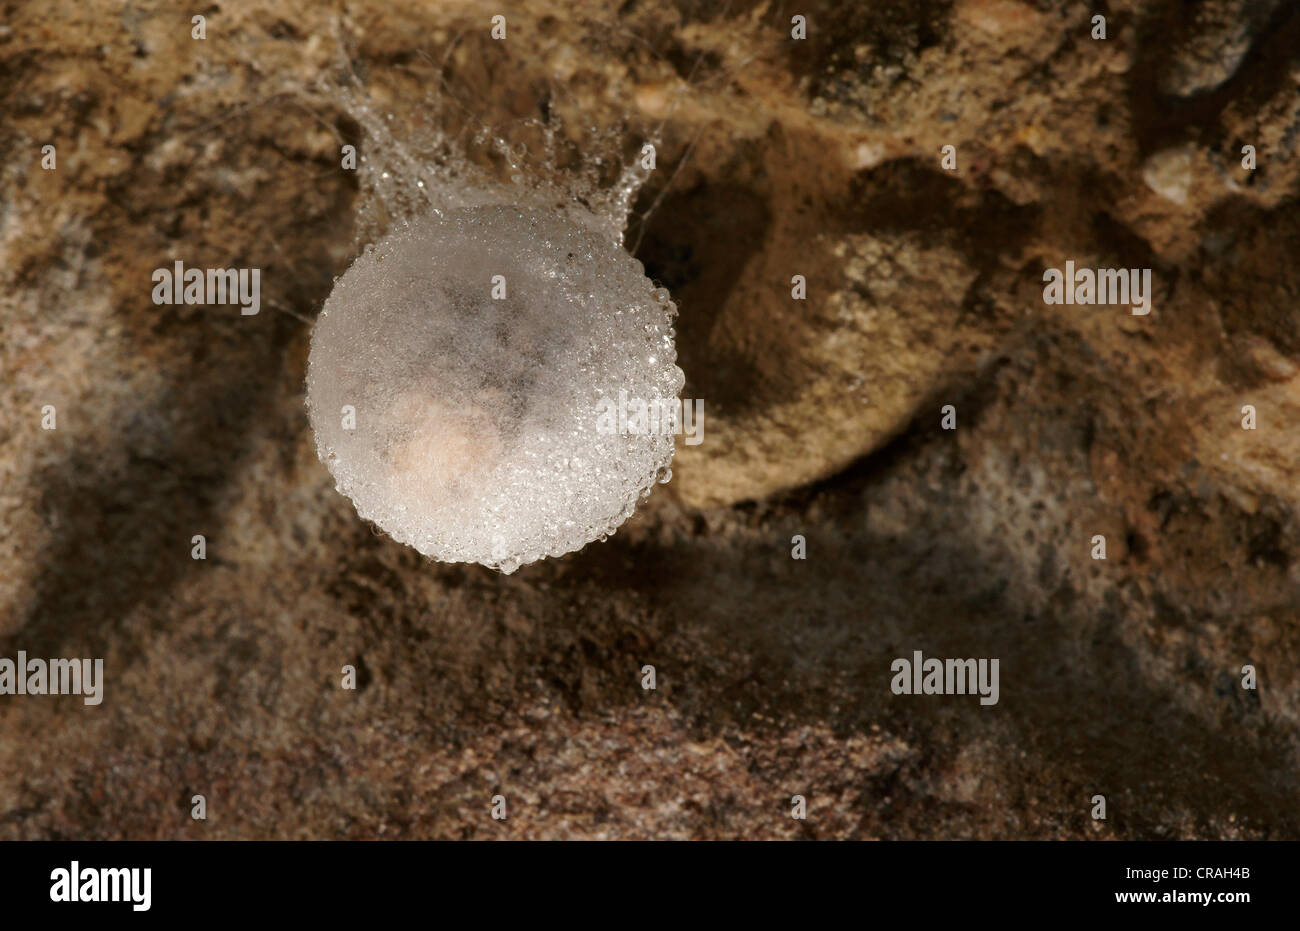 Sacs d'oeufs de l'araignée des grottes (Meta menardi) Banque D'Images